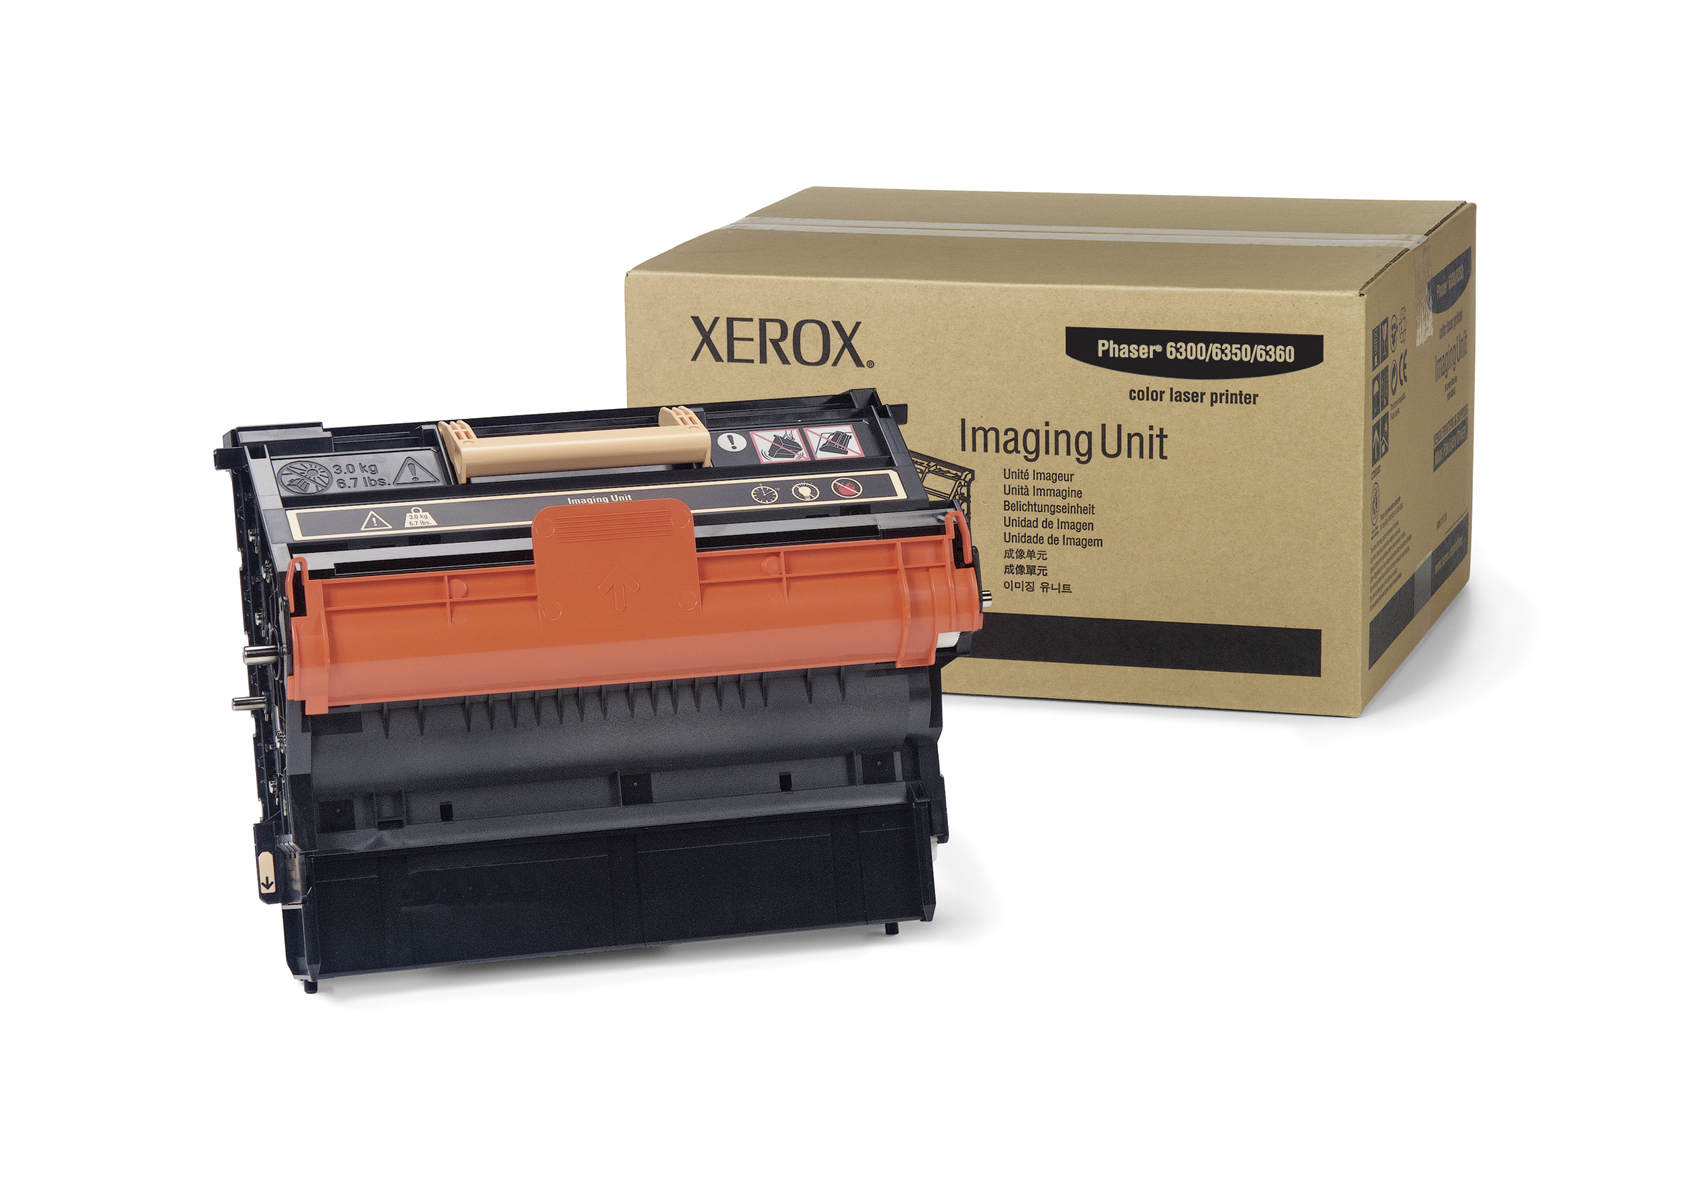 Xerox Unidad de Impresión Phaser 6300/6350/6360